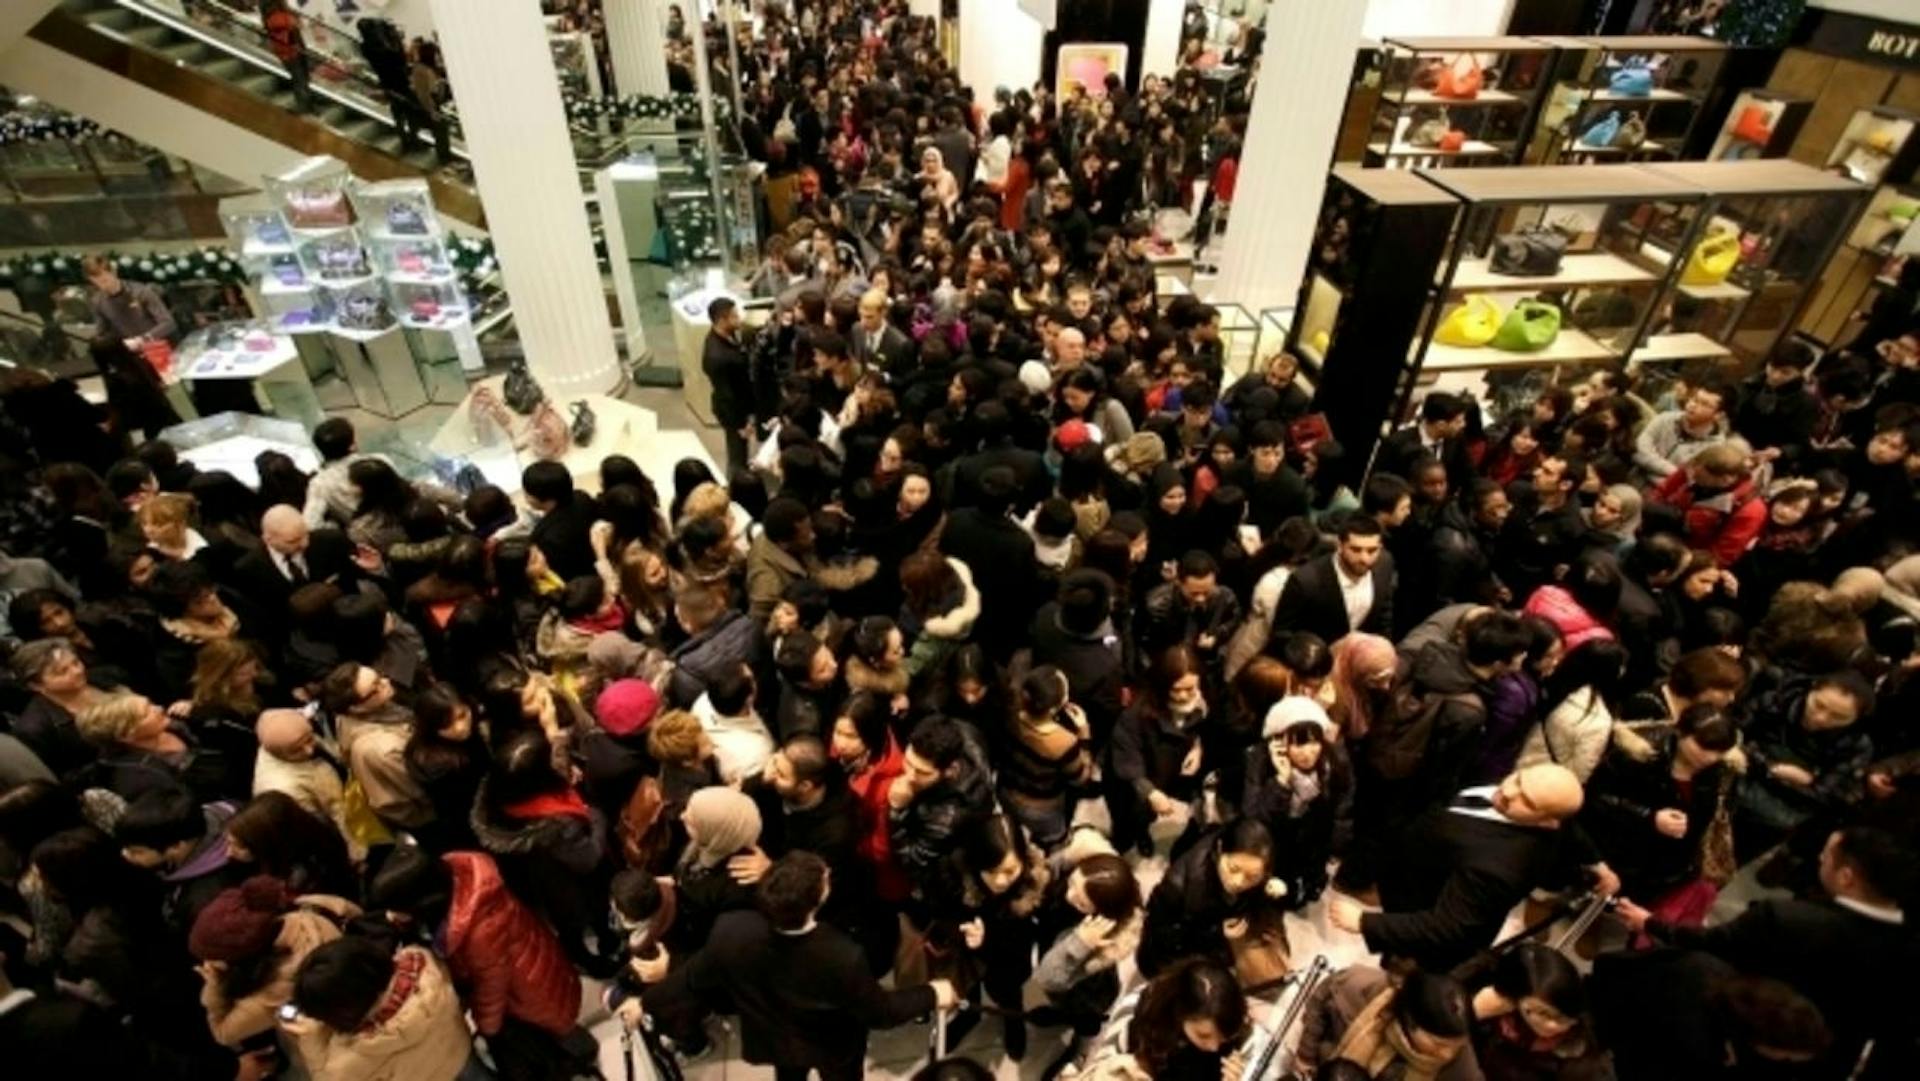 Много людей в очереди. Толпа людей в магазине. Толпа в торговом центре. Толпы народу в магазине. Очередь в магазине.